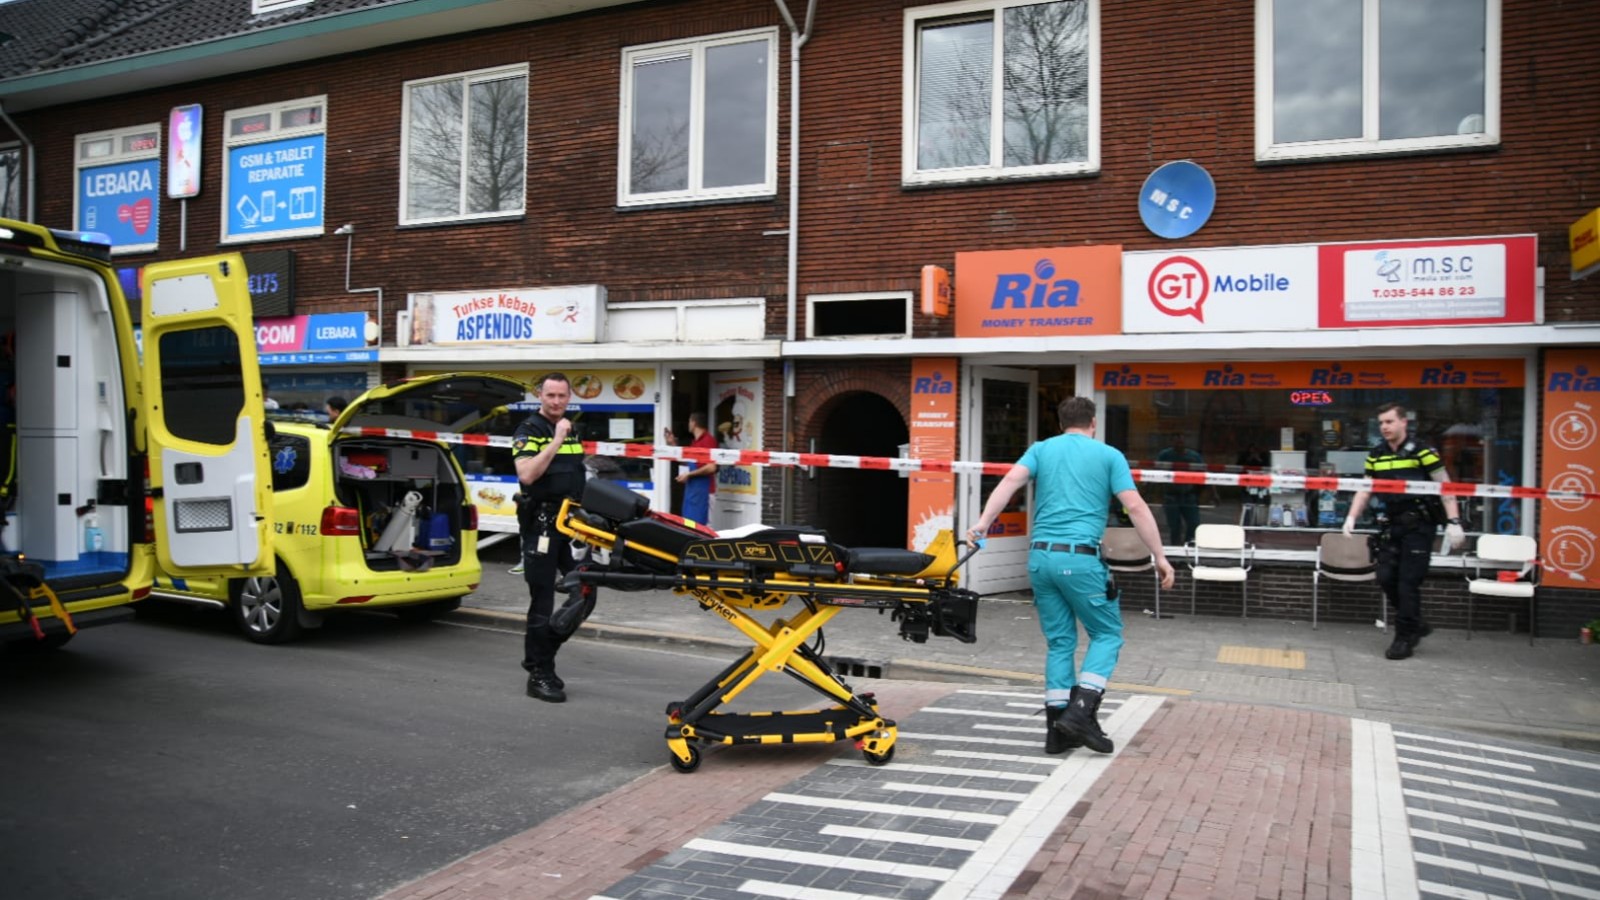 Man neergestoken achter station Hilversum, klopjacht naar dader